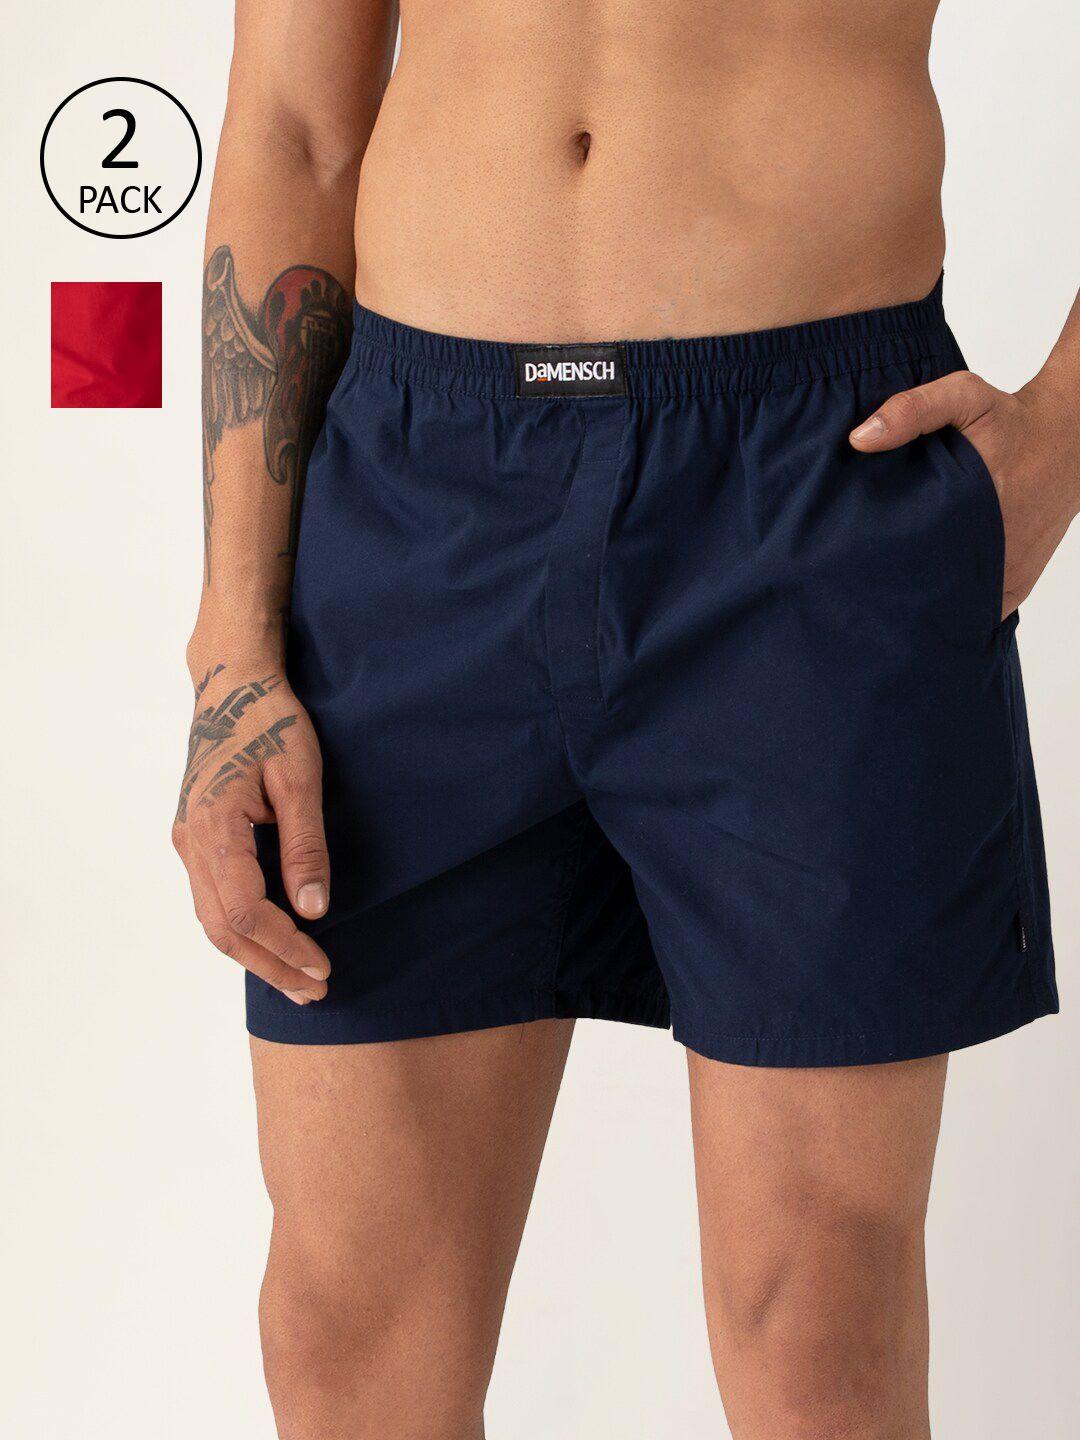 damensch men pack of 2 solid ultra-light cotton regular fit boxer shorts